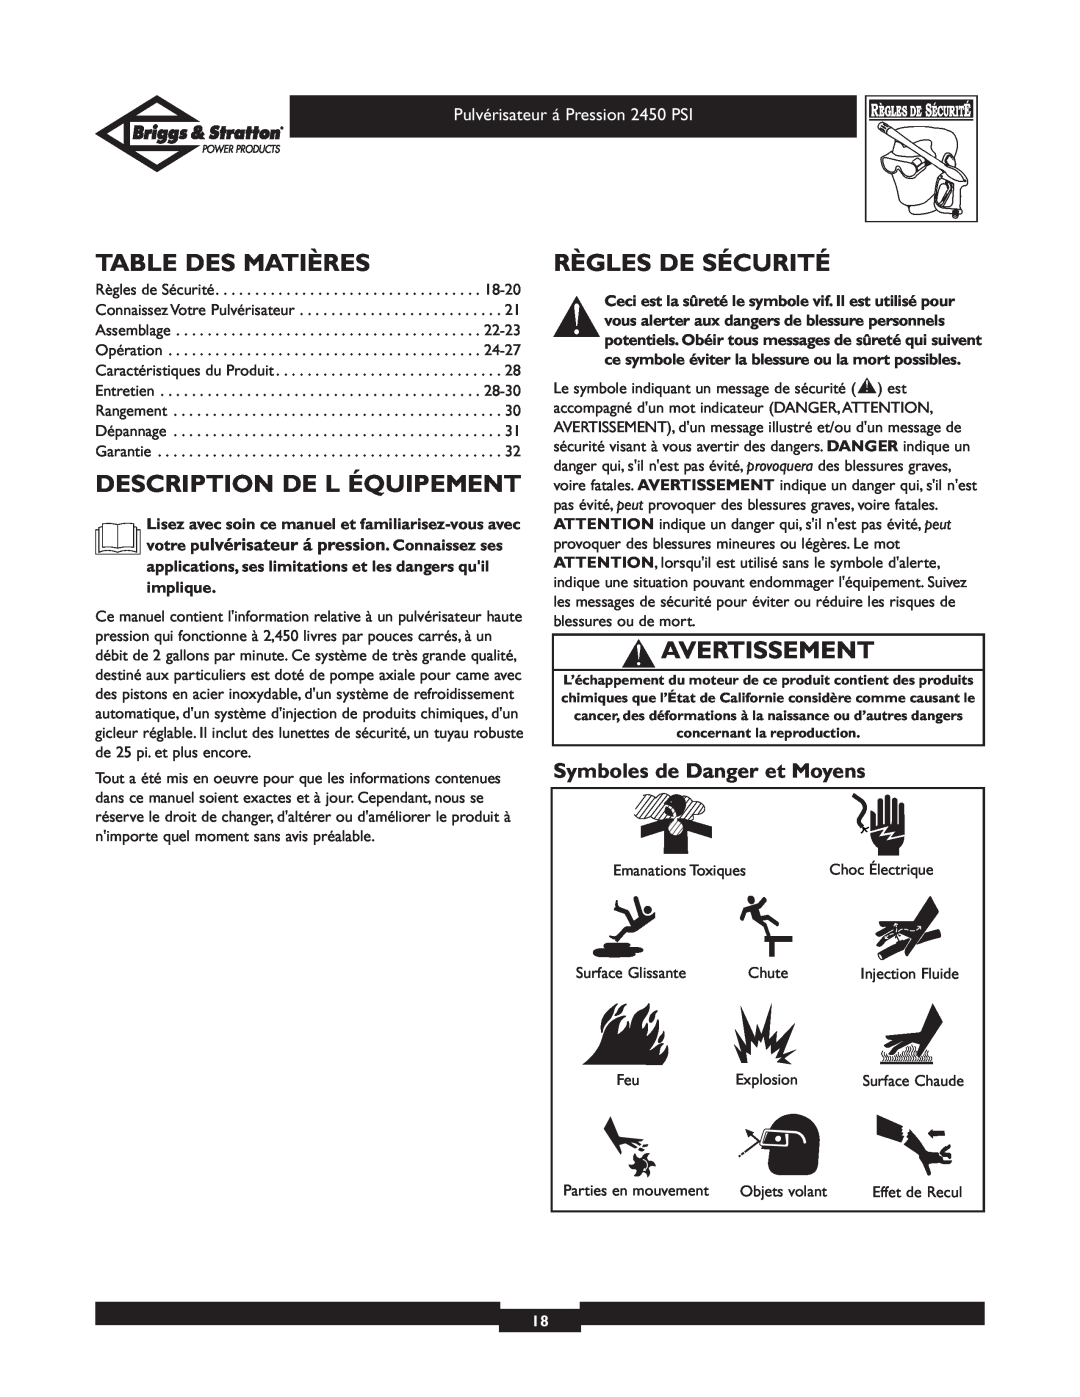 Briggs & Stratton 020219 owner manual Table Des Matières, Description De L Équipement, Règles De Sécurité, Avertissement 